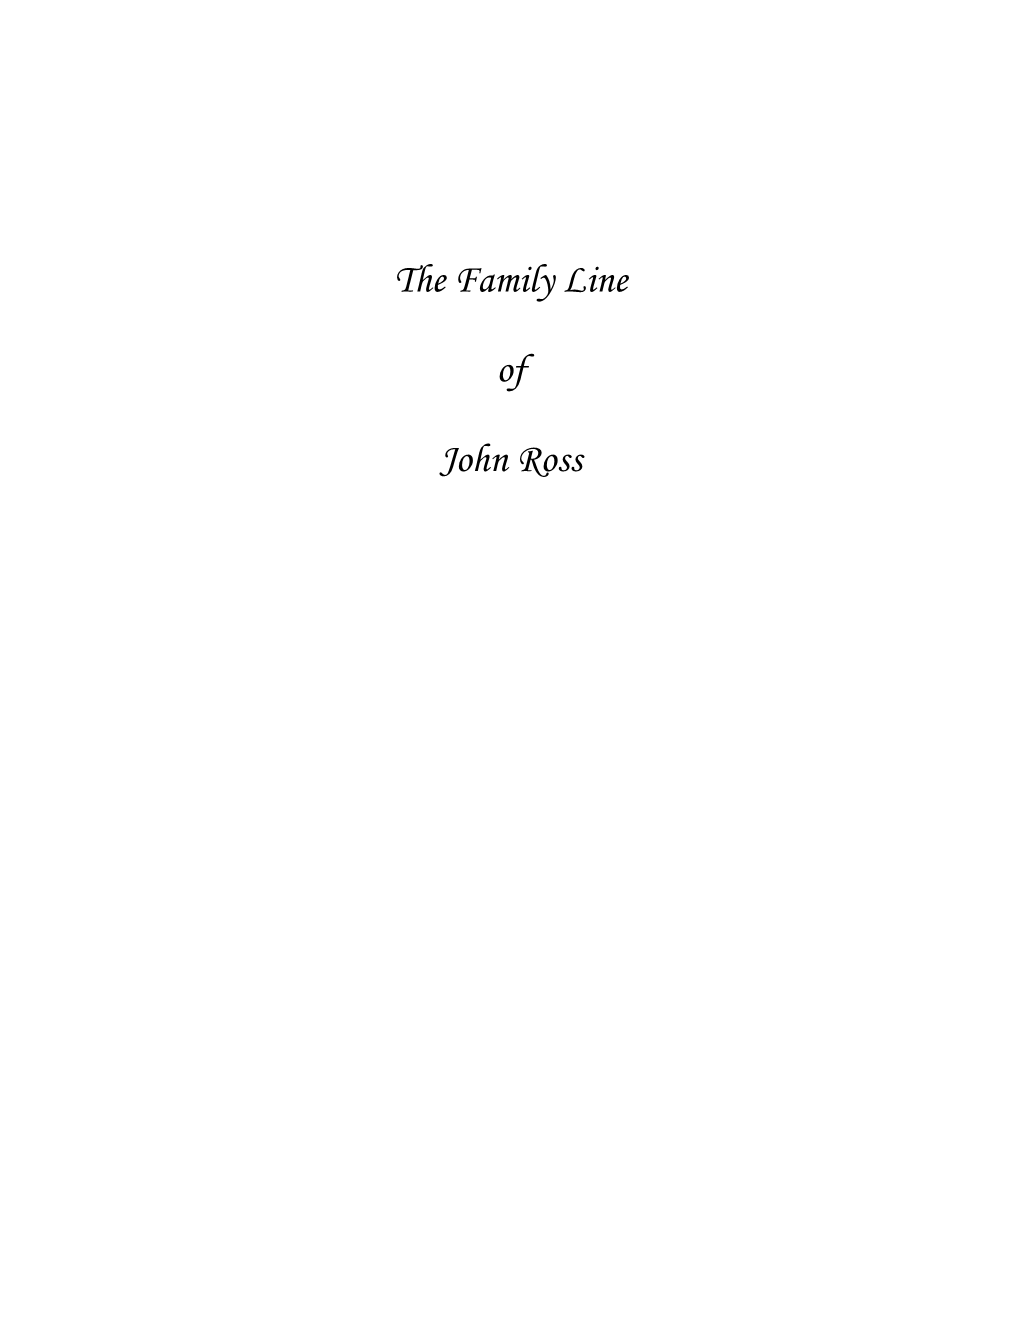 The Family Line of John Ross